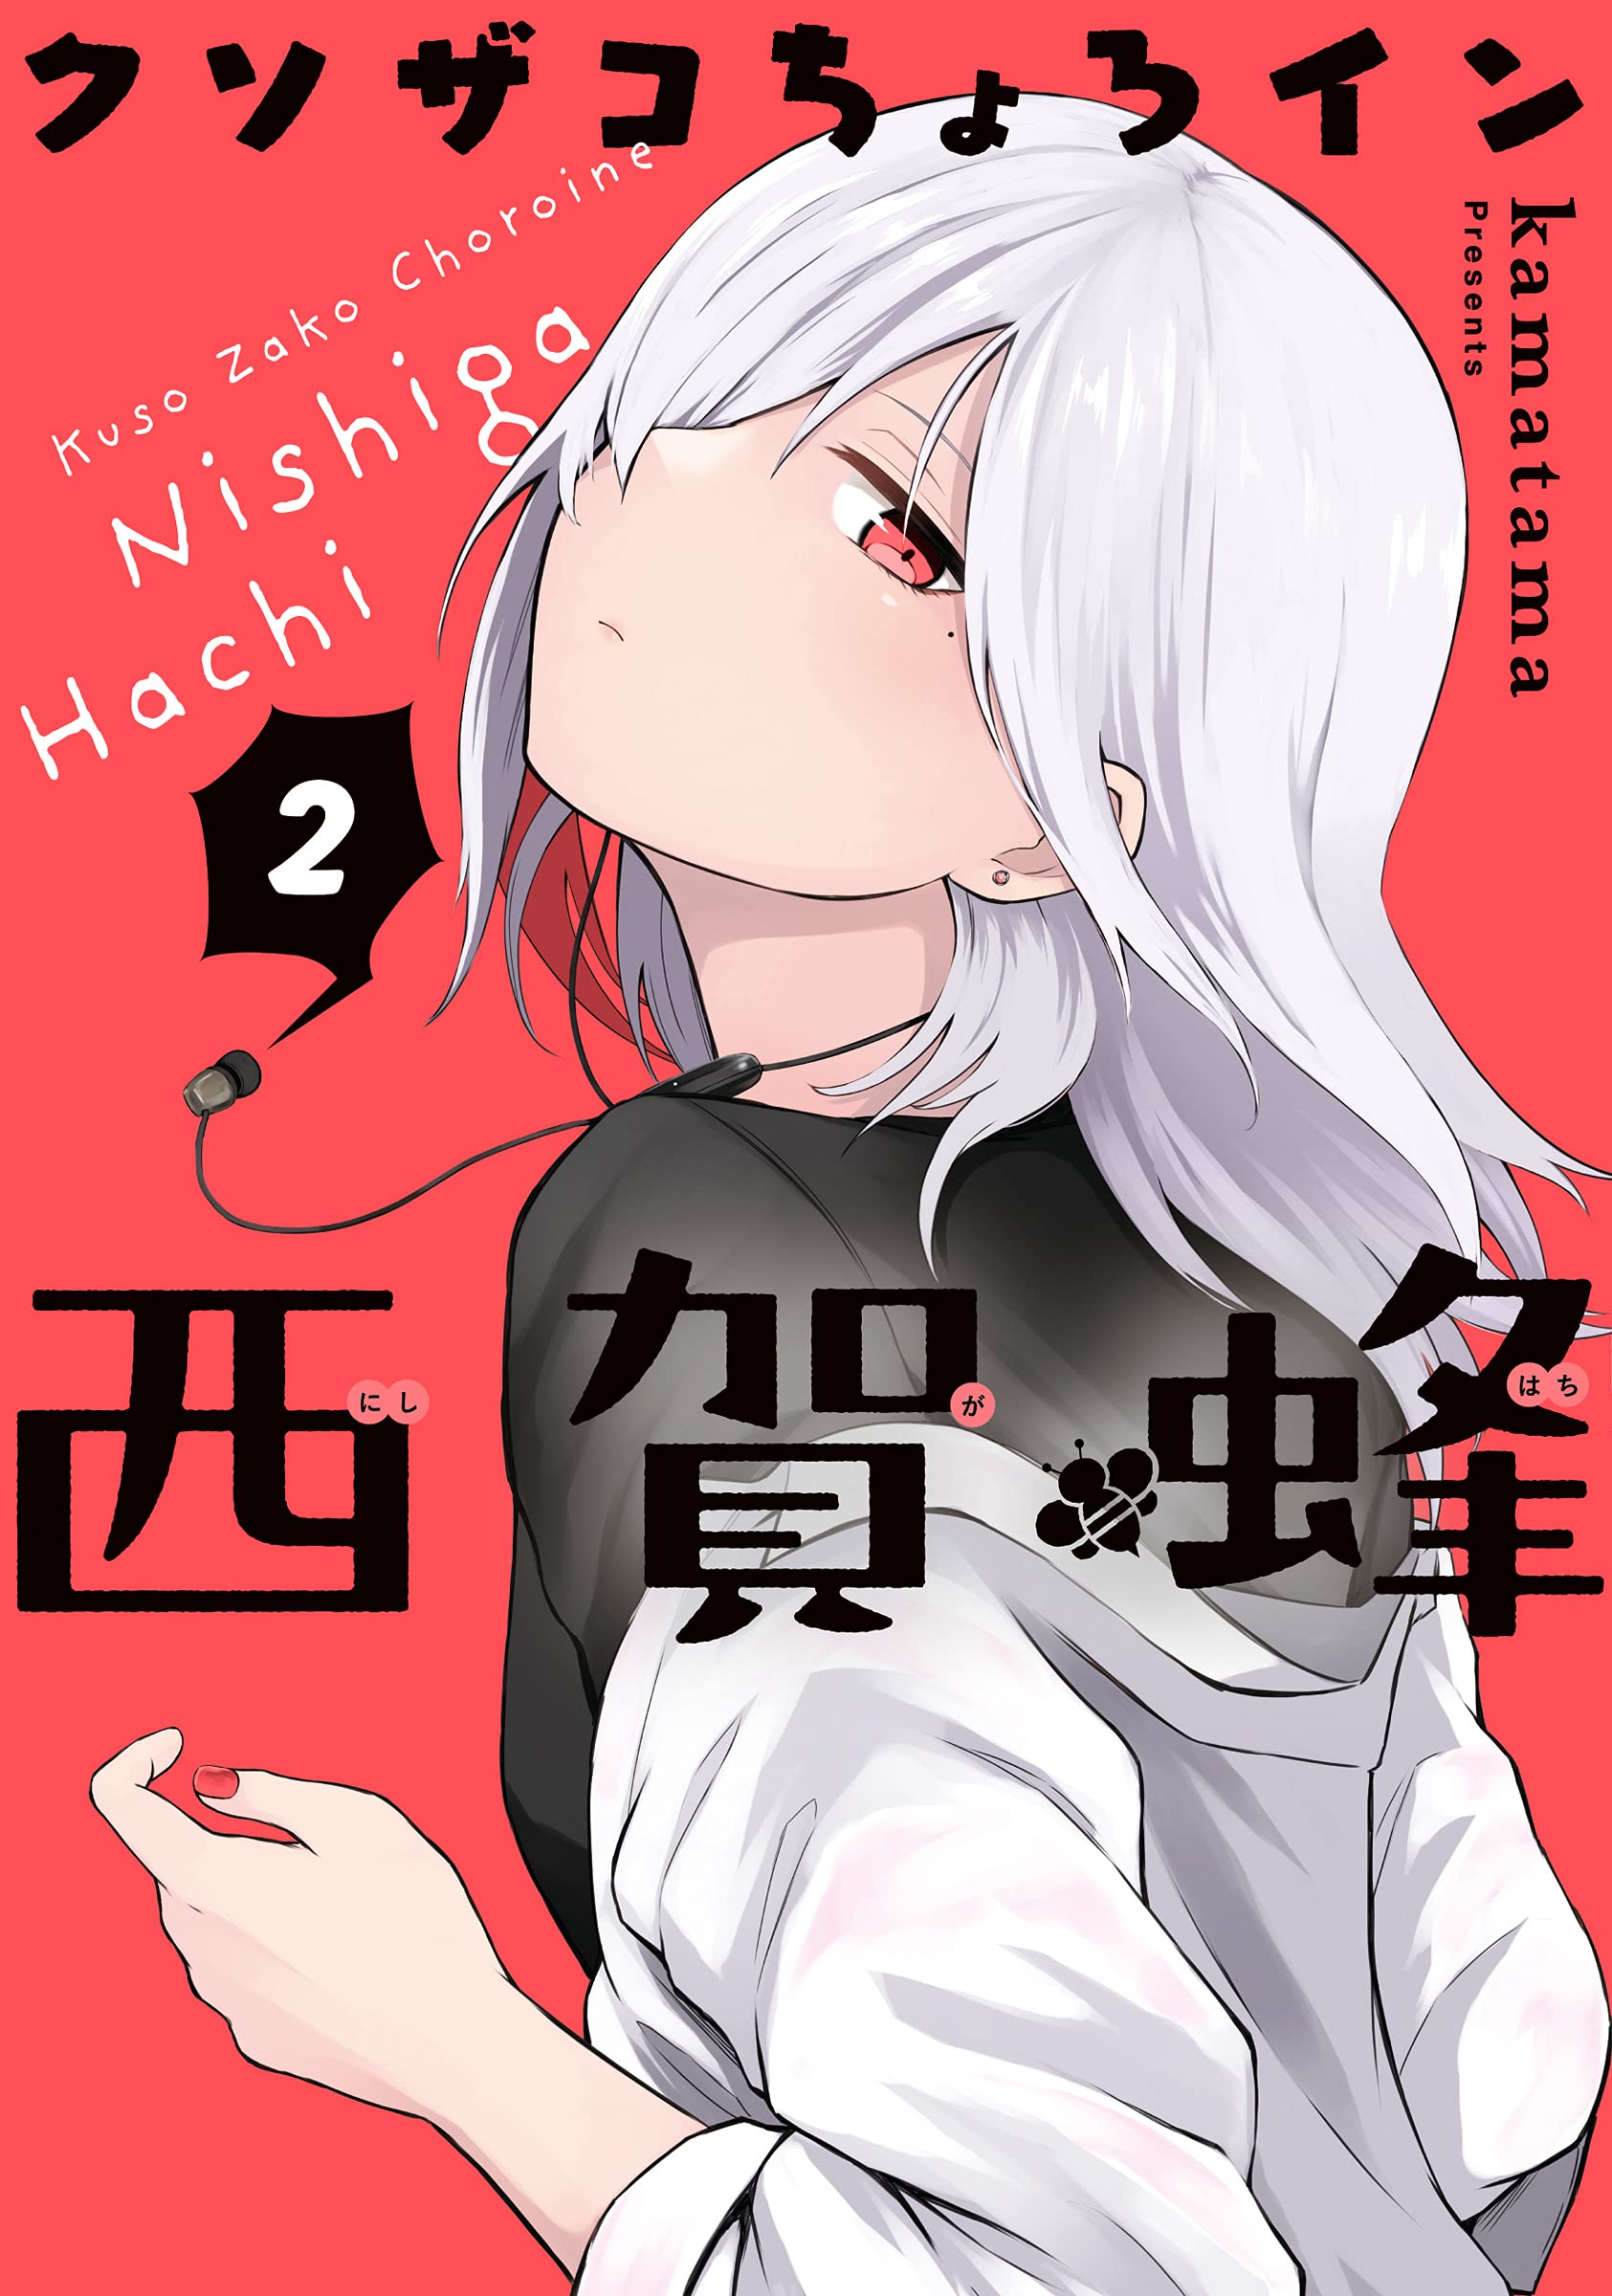 Kusozako Choroin Nishiga Hachi - MangaDex